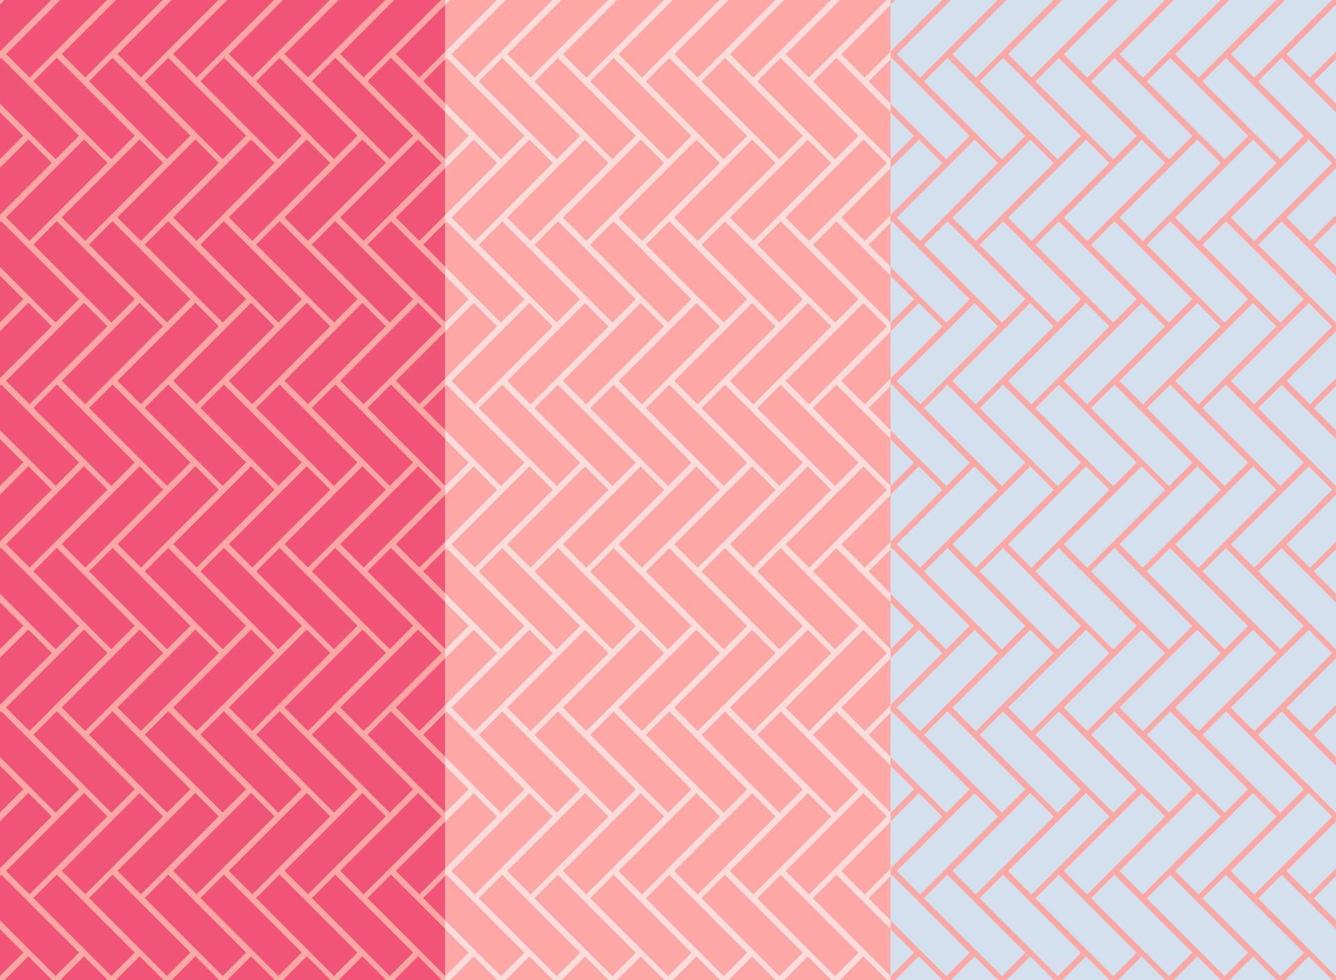 Fischgrät-Fliesenmuster. diagonale rosafarbene keramikziegelhintergründe. Vektornahtloser Illustrationssatz vektor